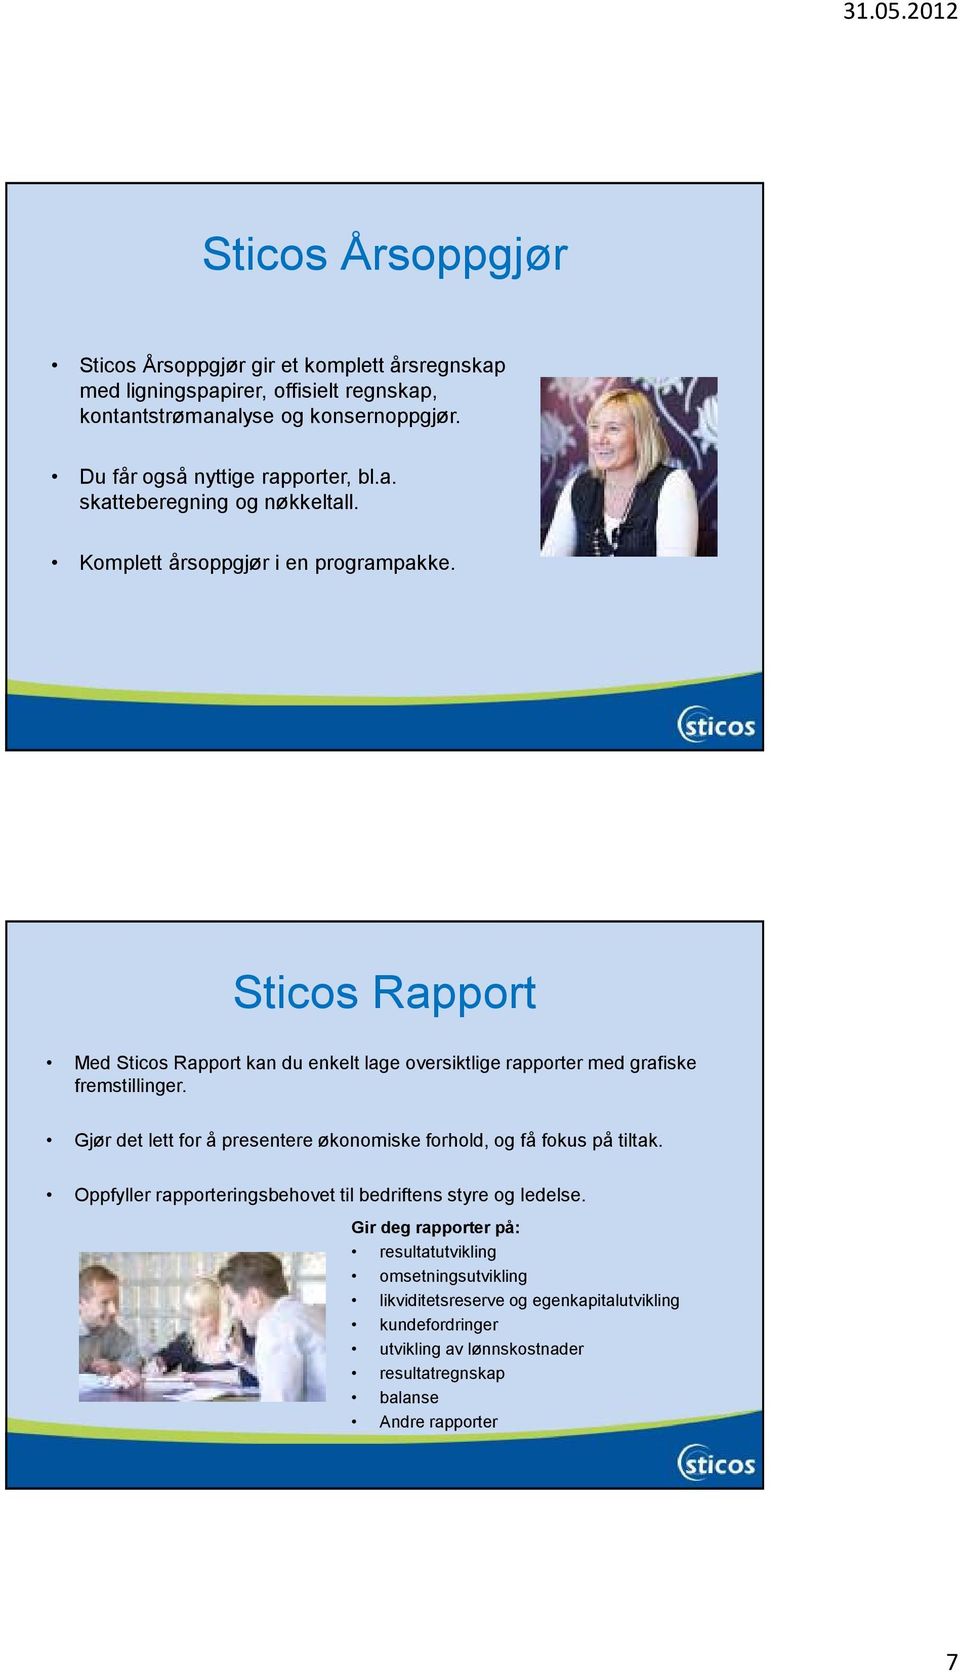 Sticos Rapport Med Sticos Rapport kan du enkelt lage oversiktlige rapporter med grafiske fremstillinger.